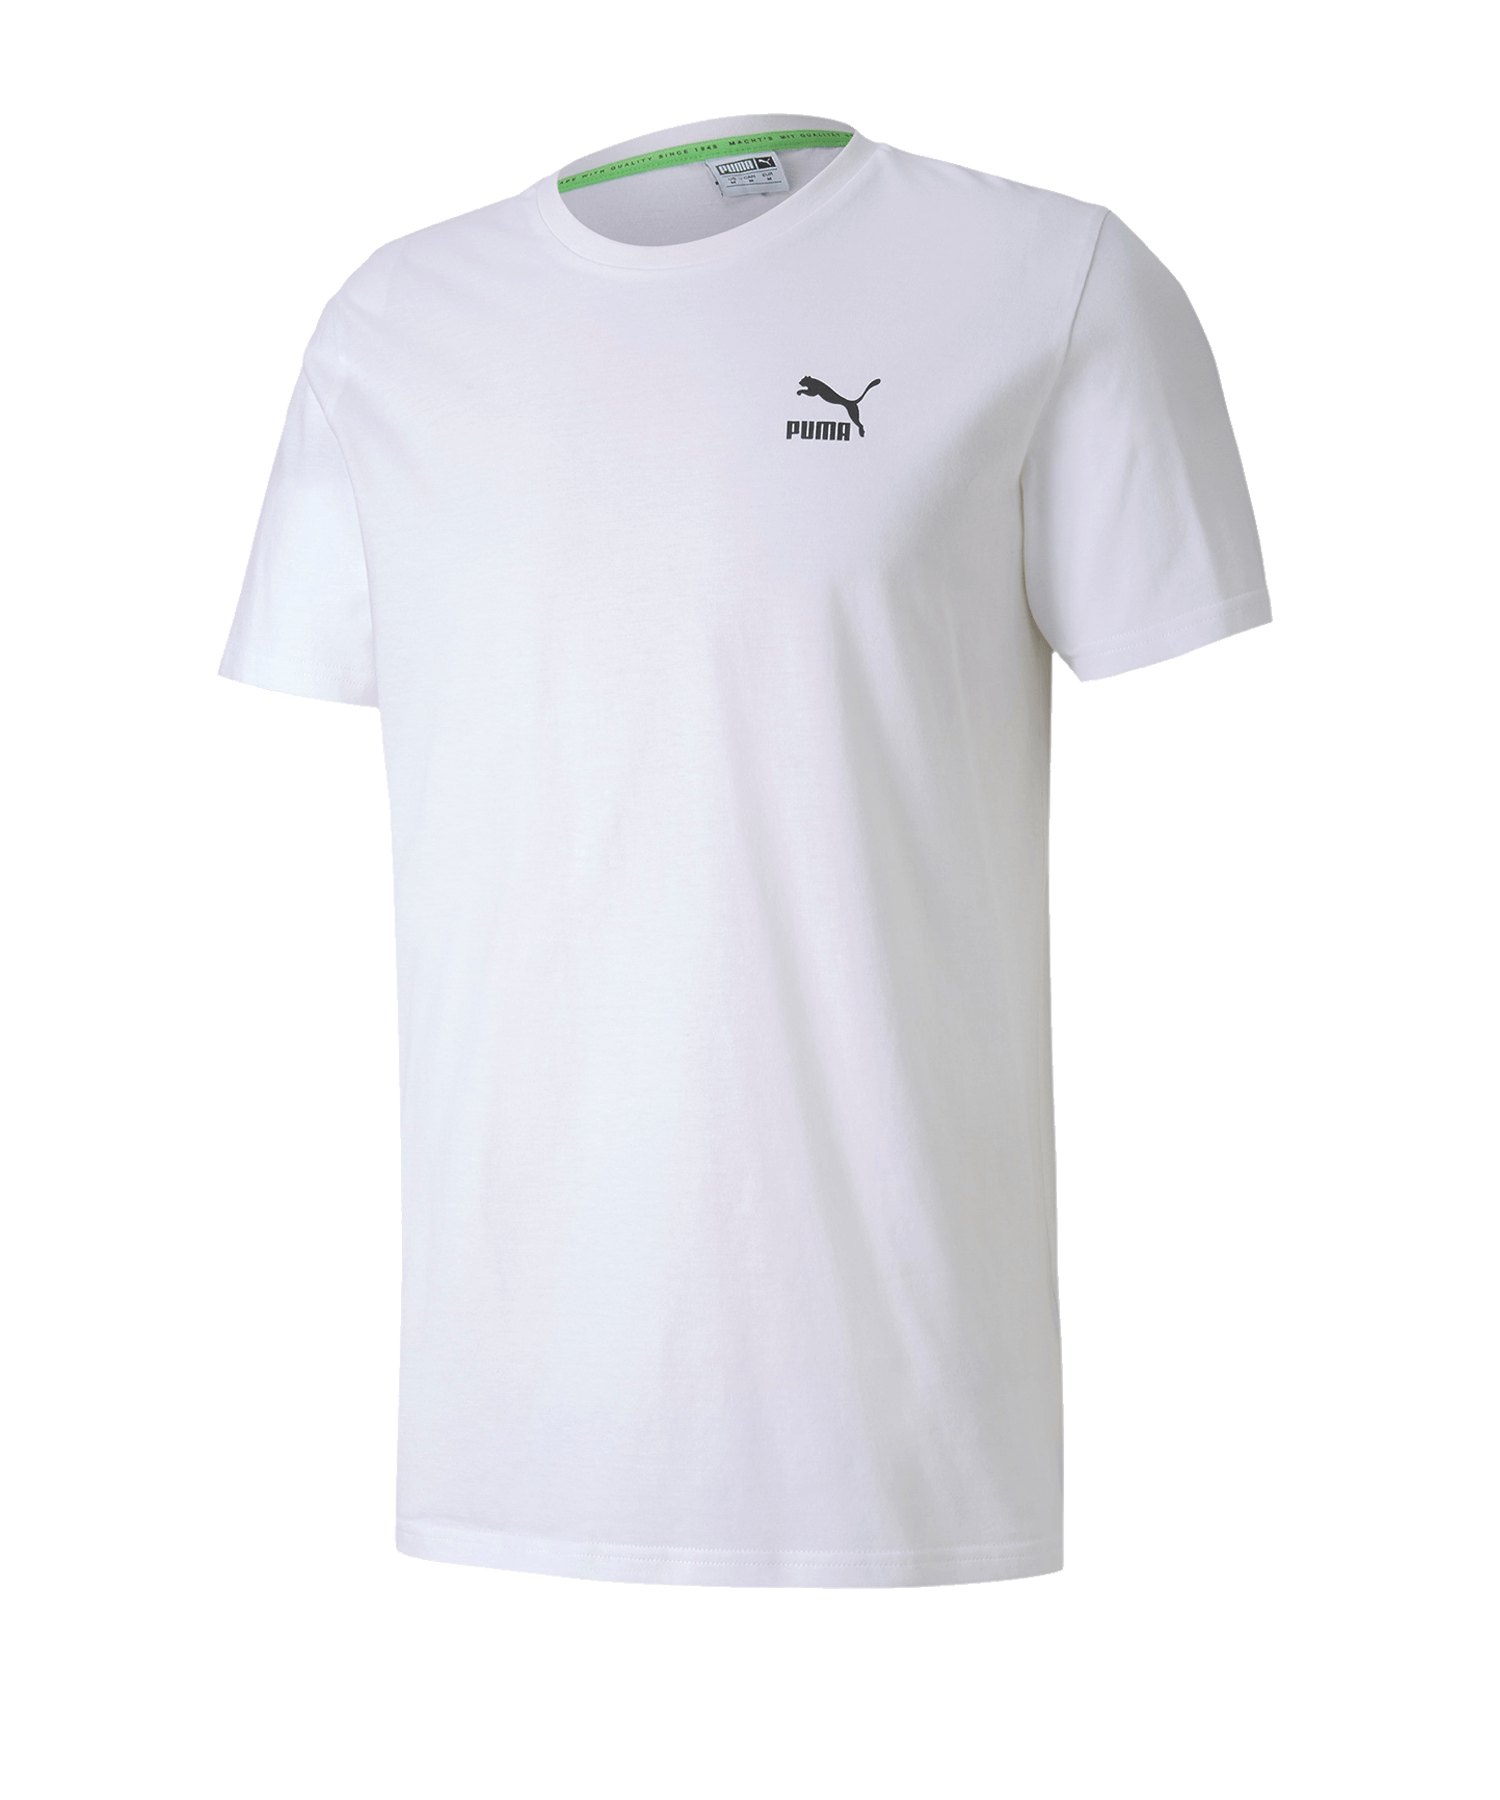 PUMA TFS Graphic T-Shirt Weiss F52 - weiss